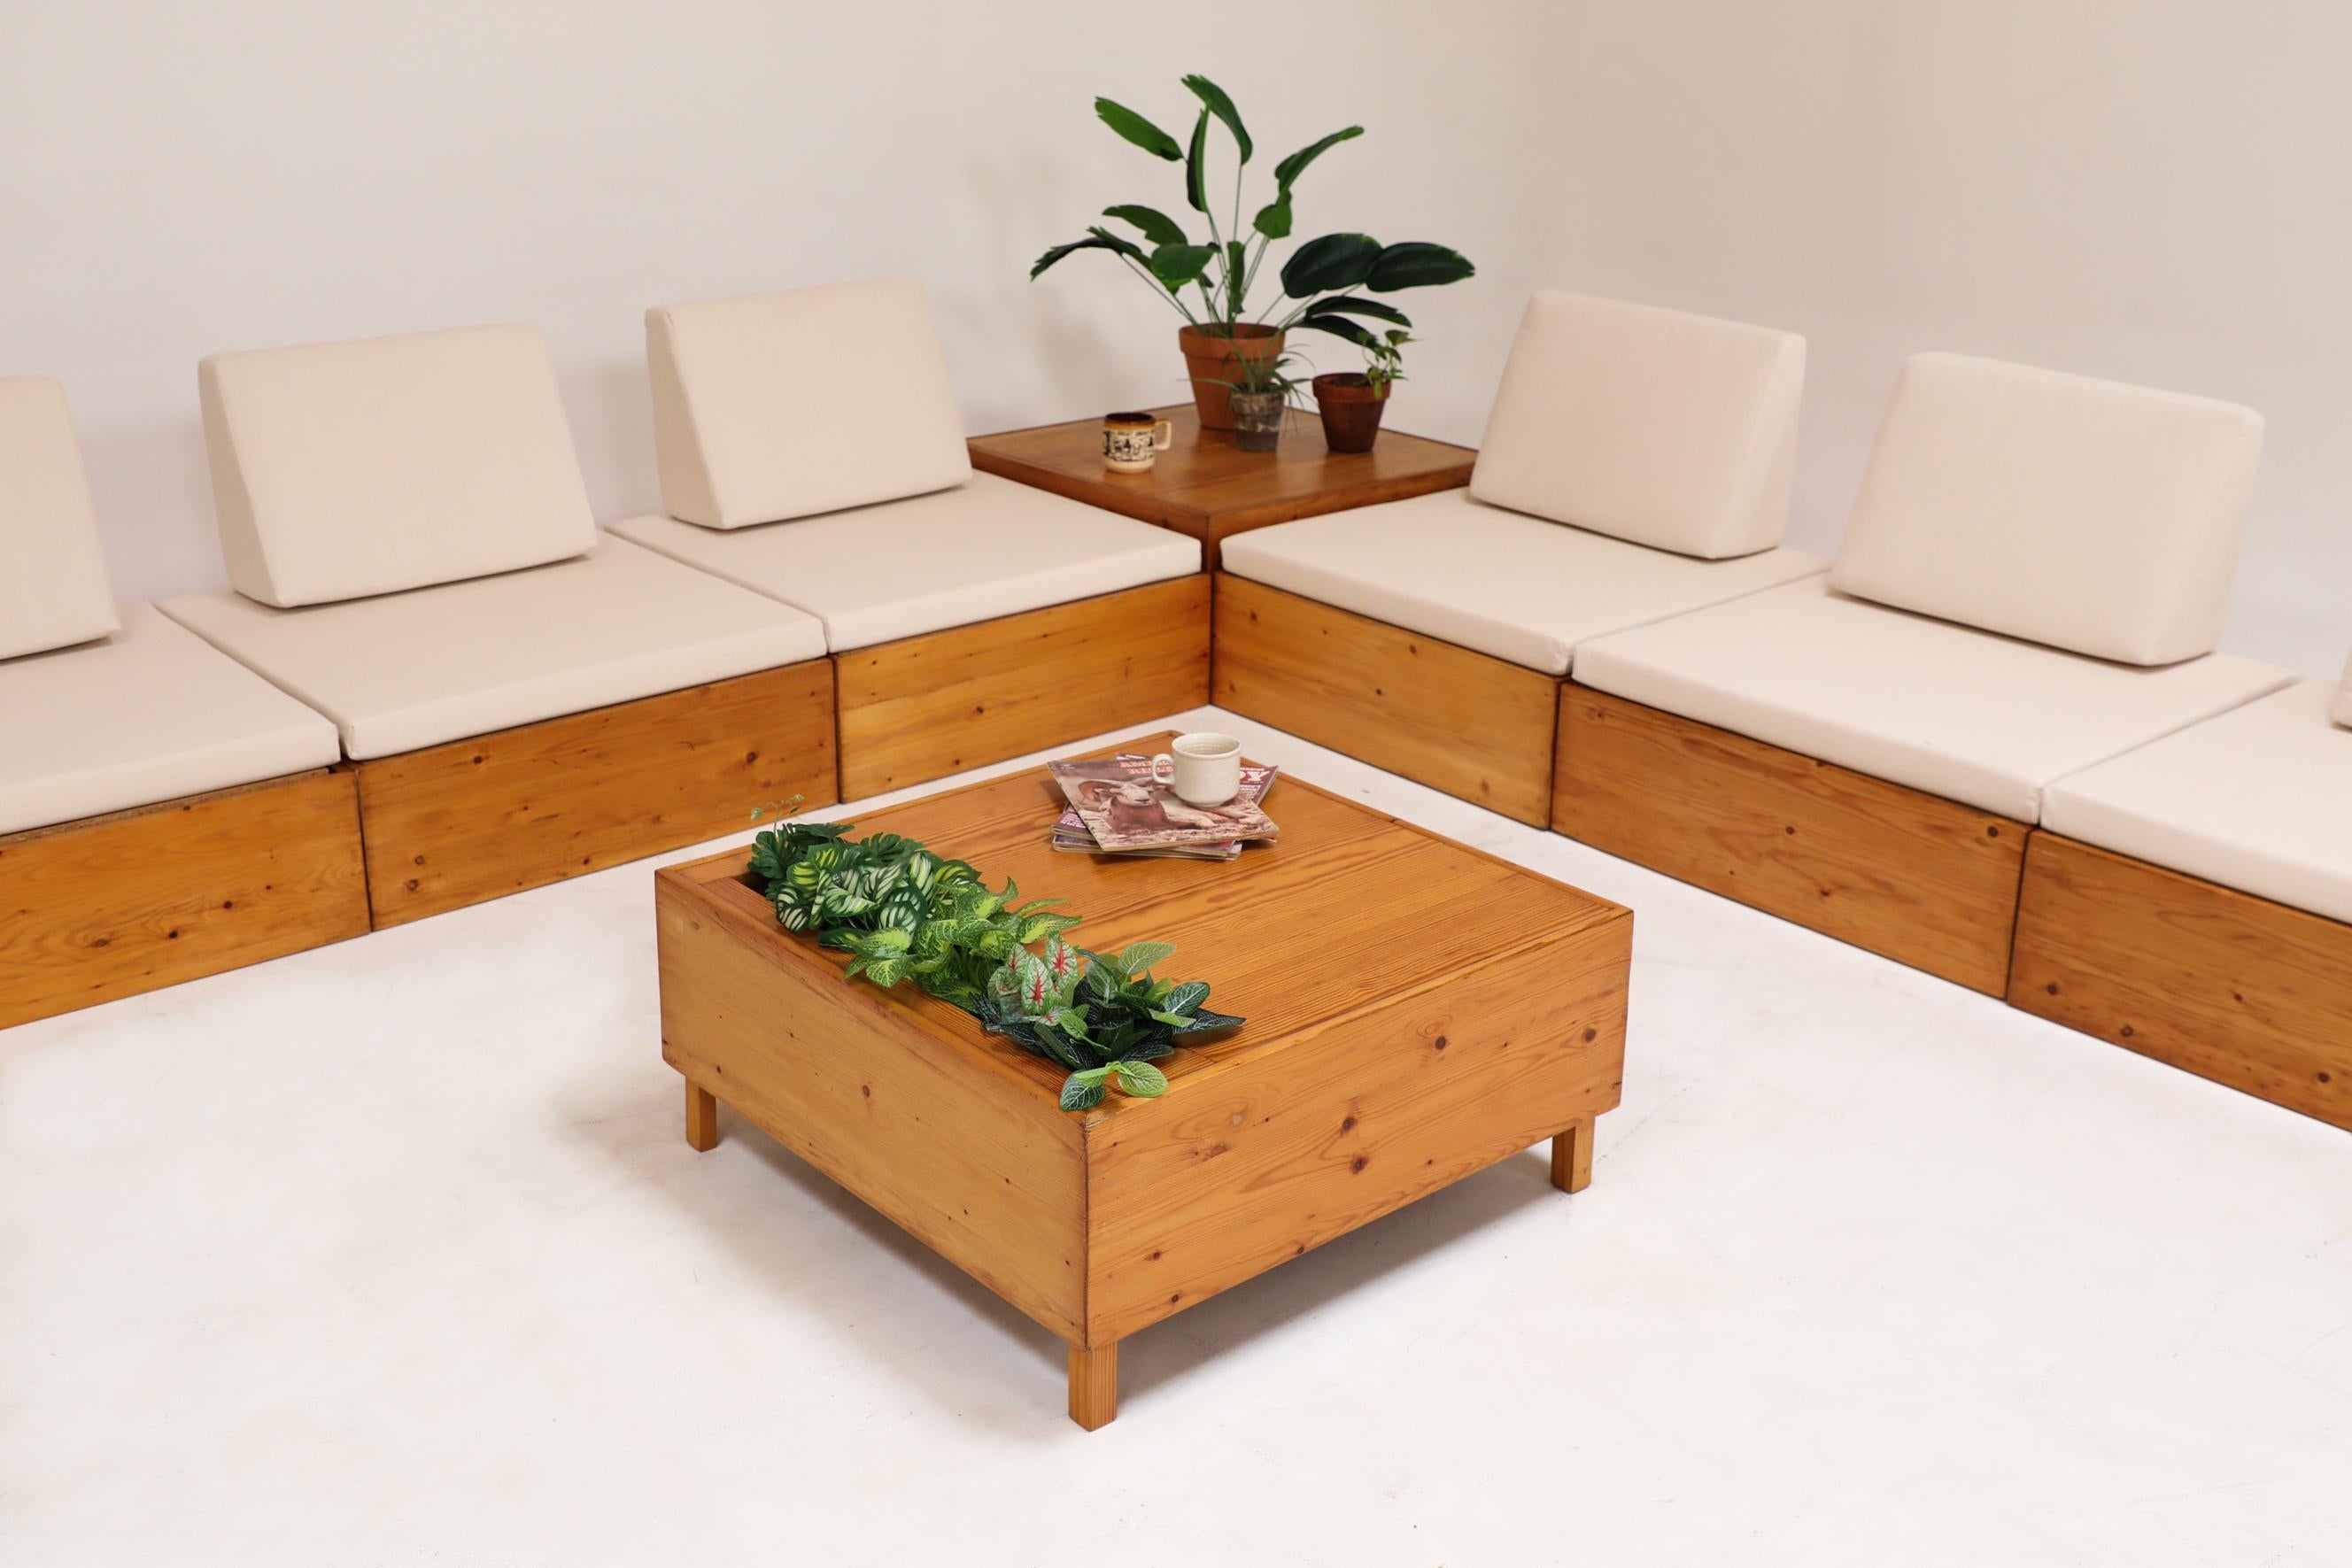 Von Ate van Apeldoorn inspirierte Sofa-Sitzgruppe aus Kiefernholz mit neuen Canvas-Sitzmöbeln und eingebauten Beistelltischen. Einer hat einen Ausschnitt für Zeitschriften oder Pflanzen. Leicht überarbeitet und mit neuen Polstern, ansonsten im